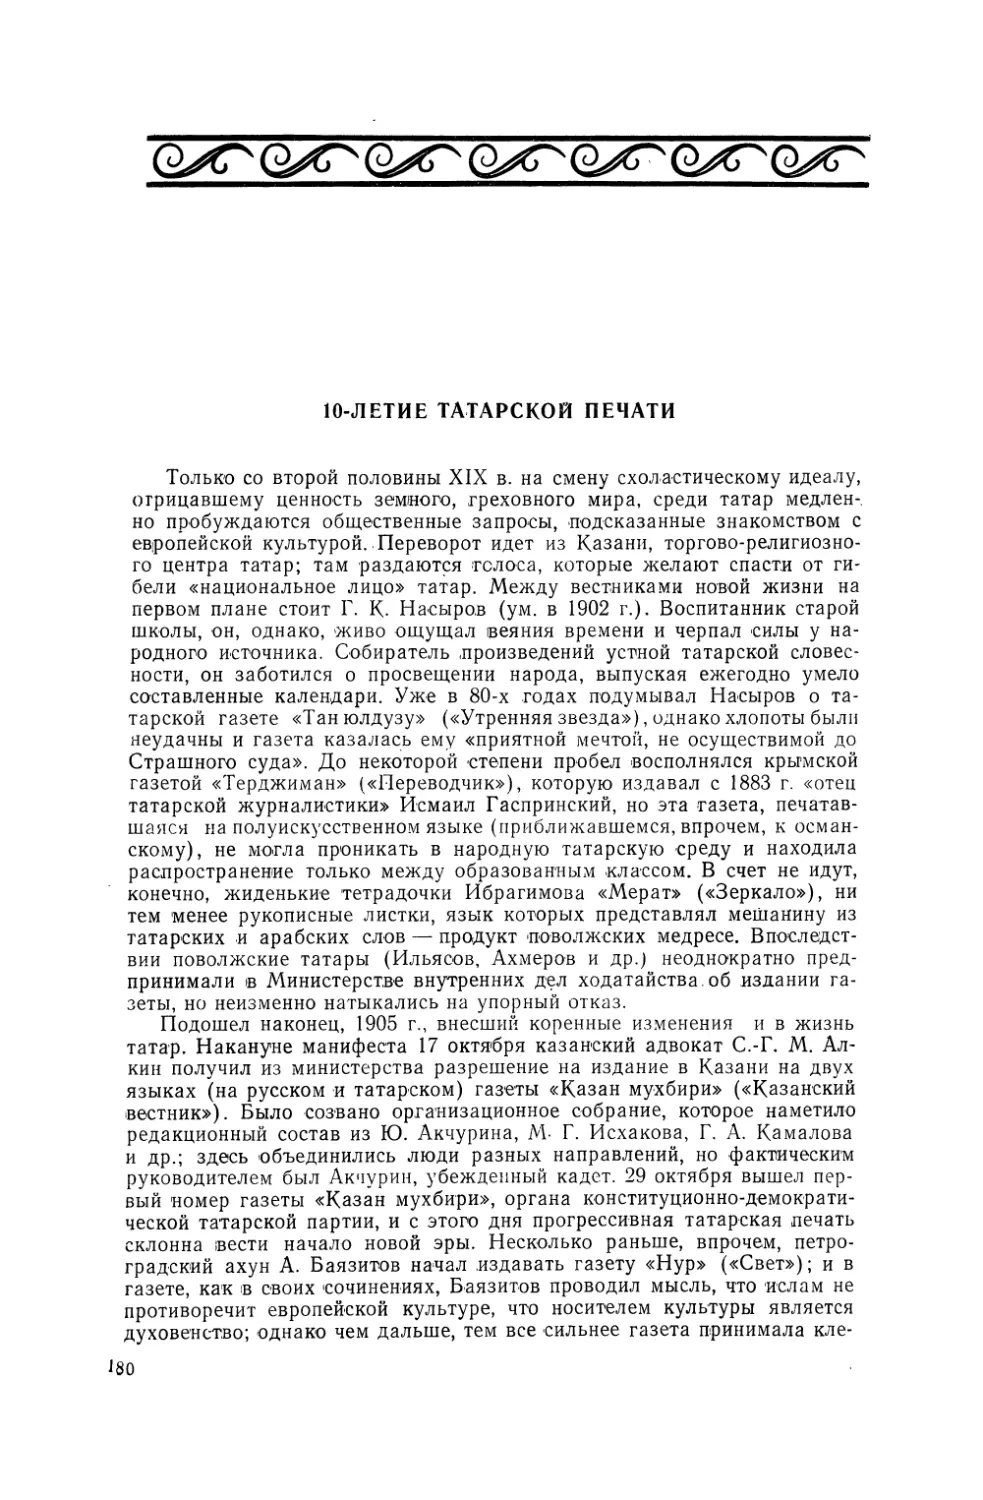 10-летие татарской печати